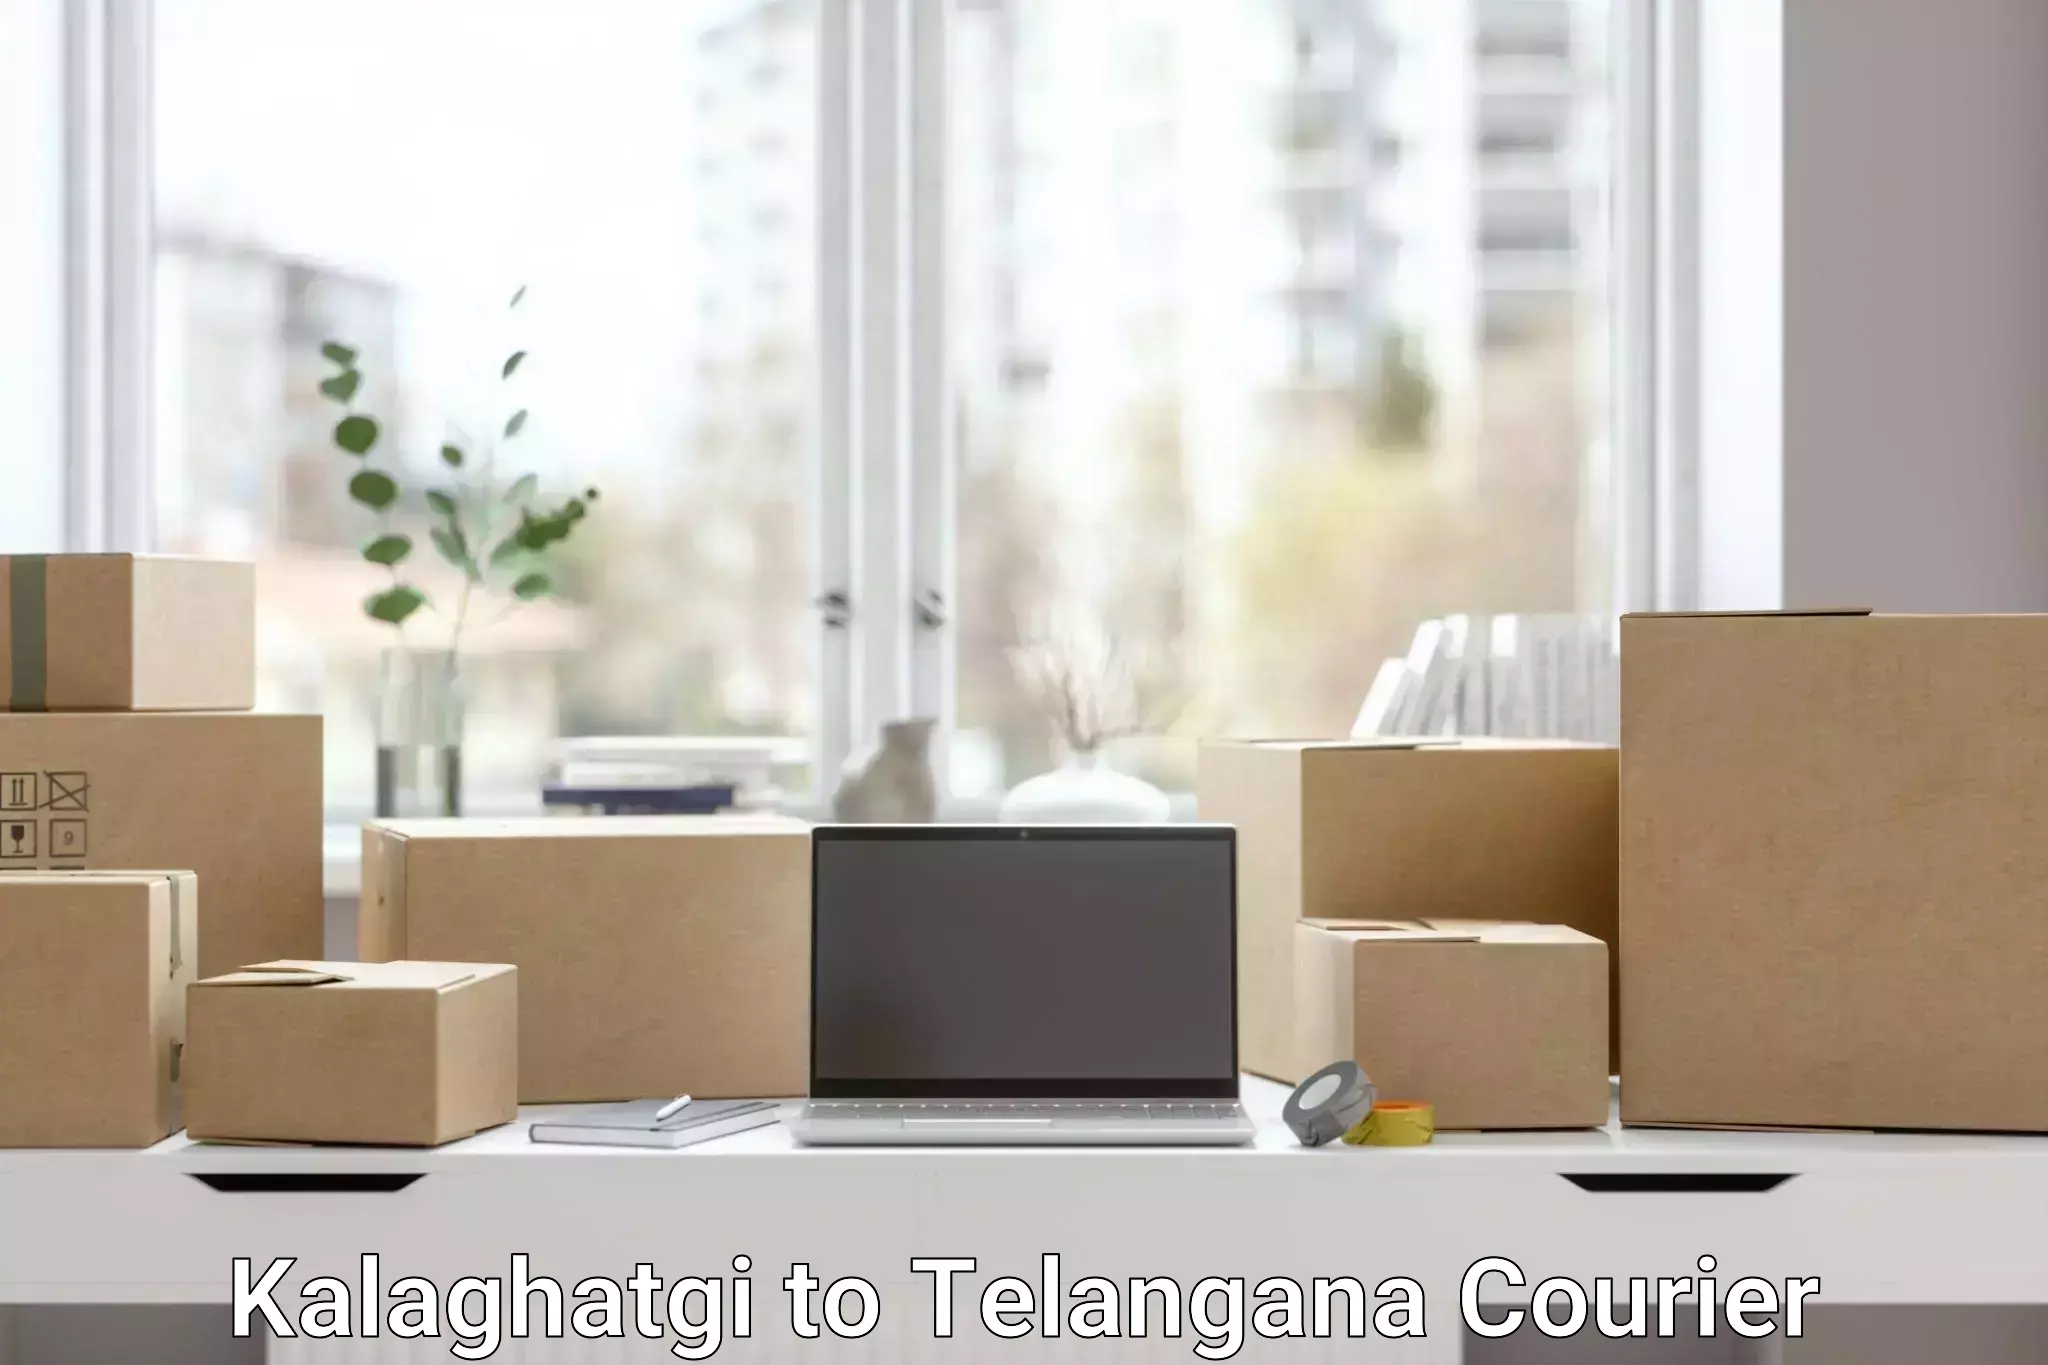 Innovative shipping solutions Kalaghatgi to Alair